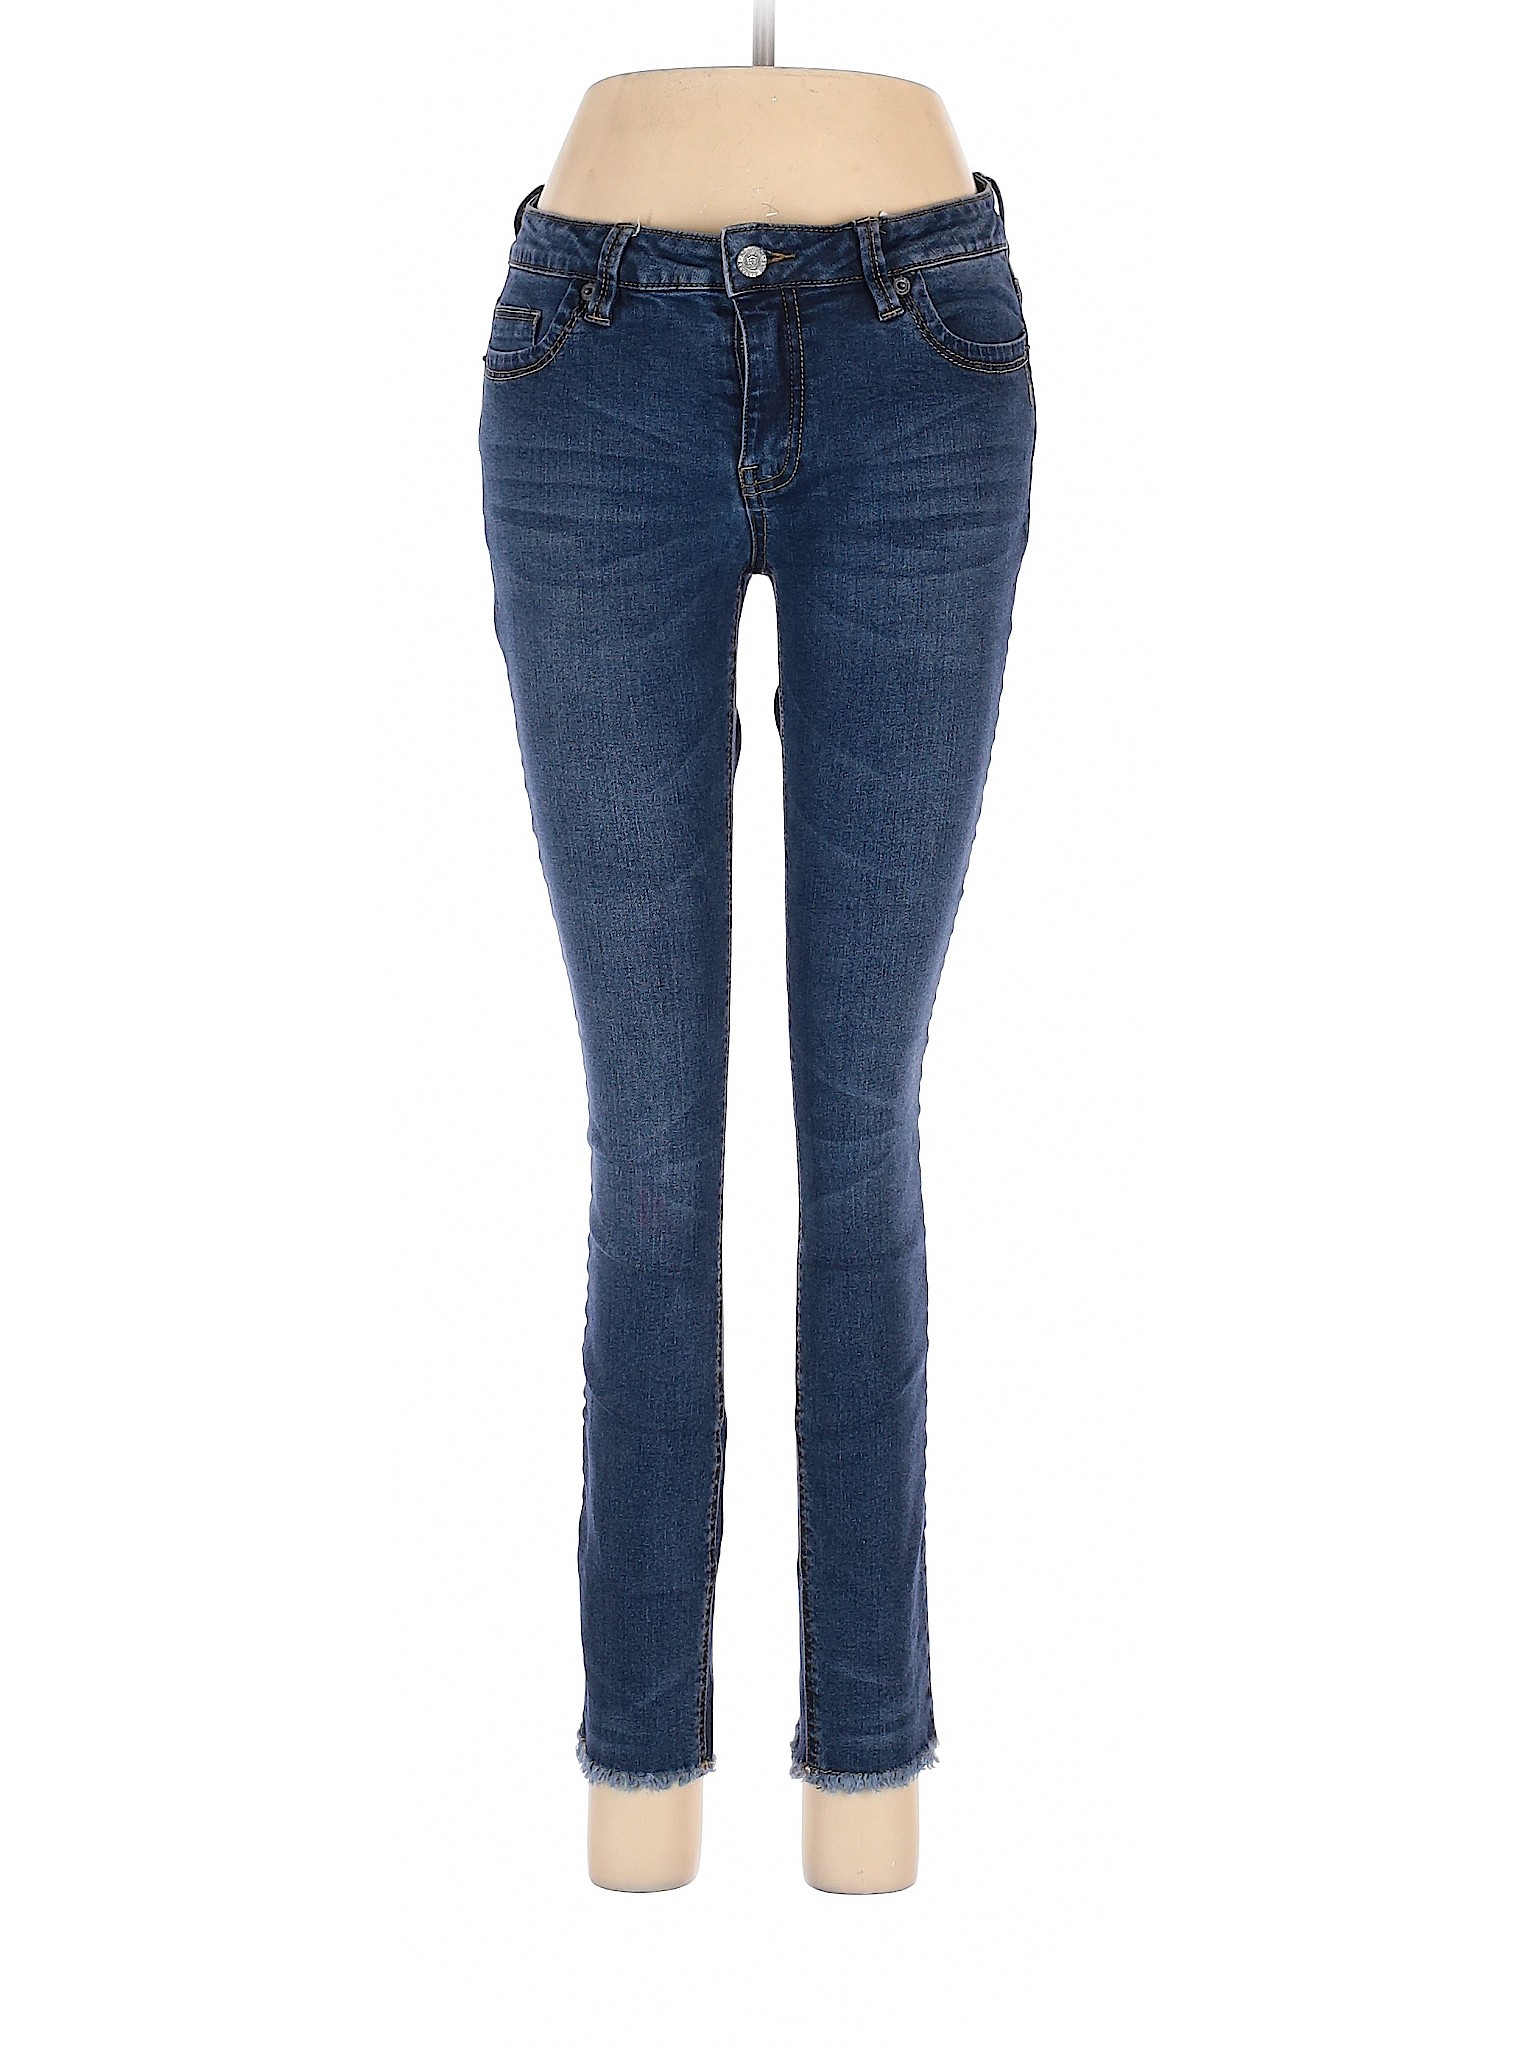 Kenneth Cole REACTION Women Blue Jeans 2 | eBay